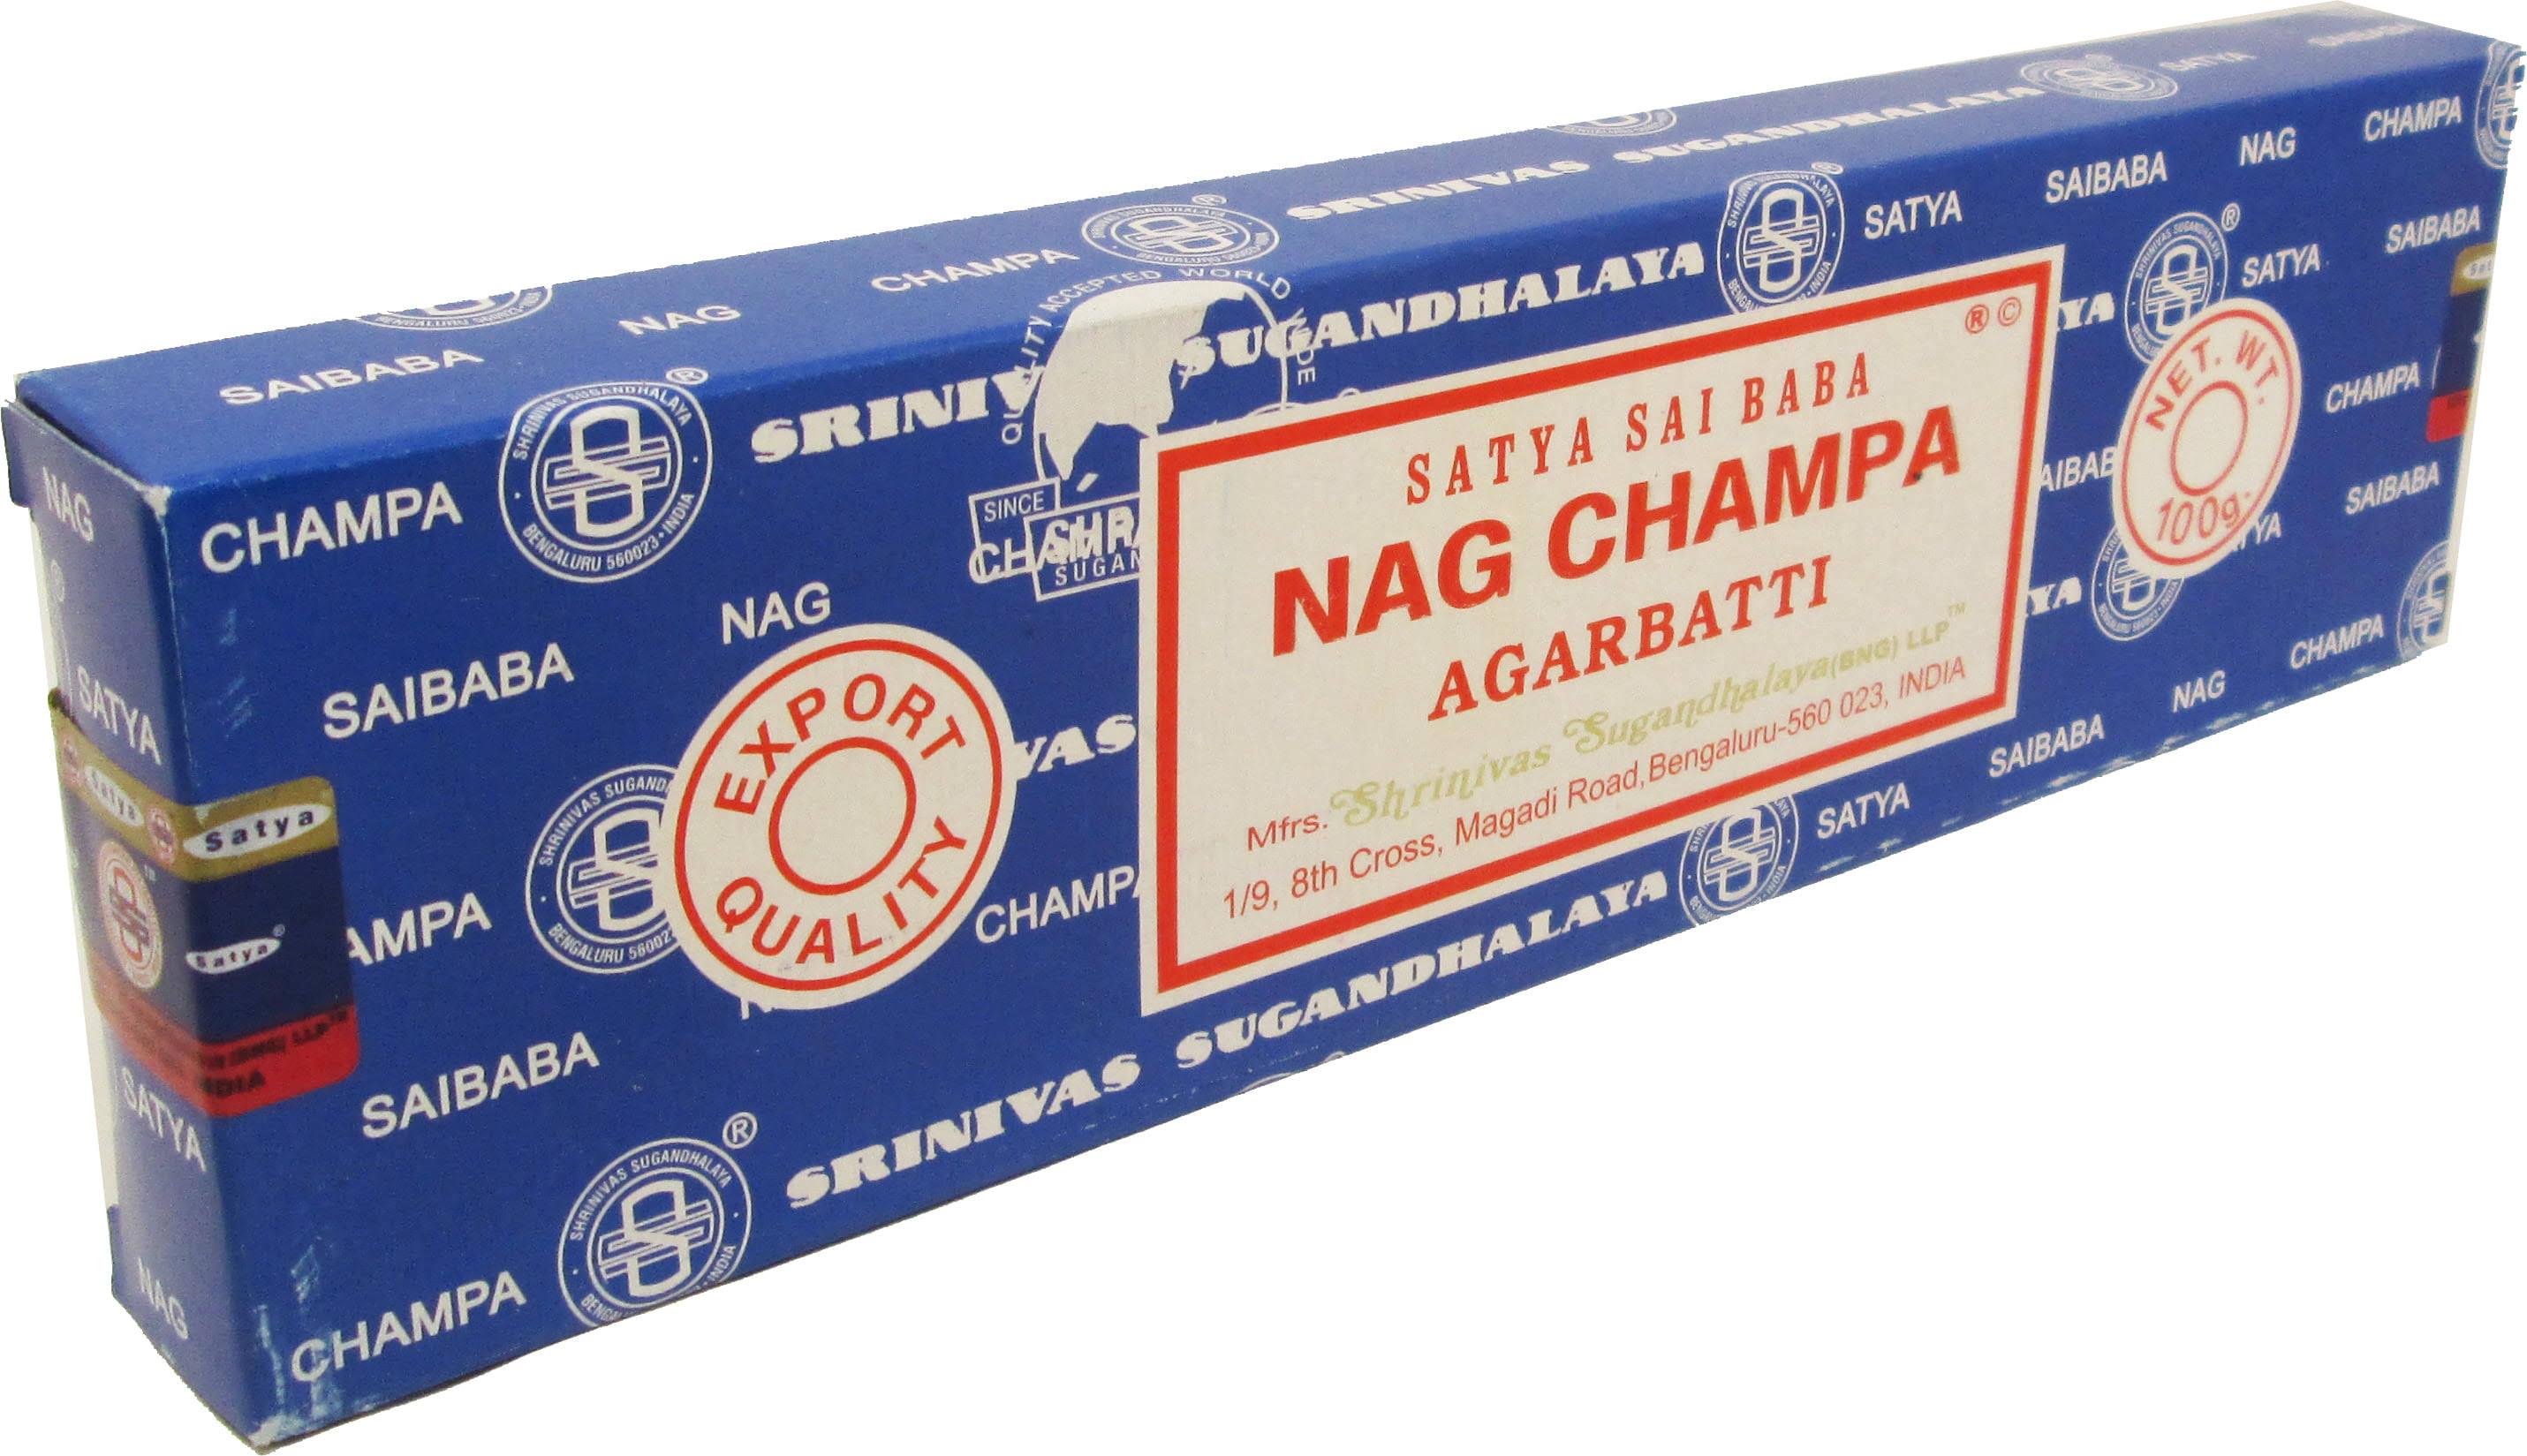 Satya Nag Champa Incense Sticks 100g